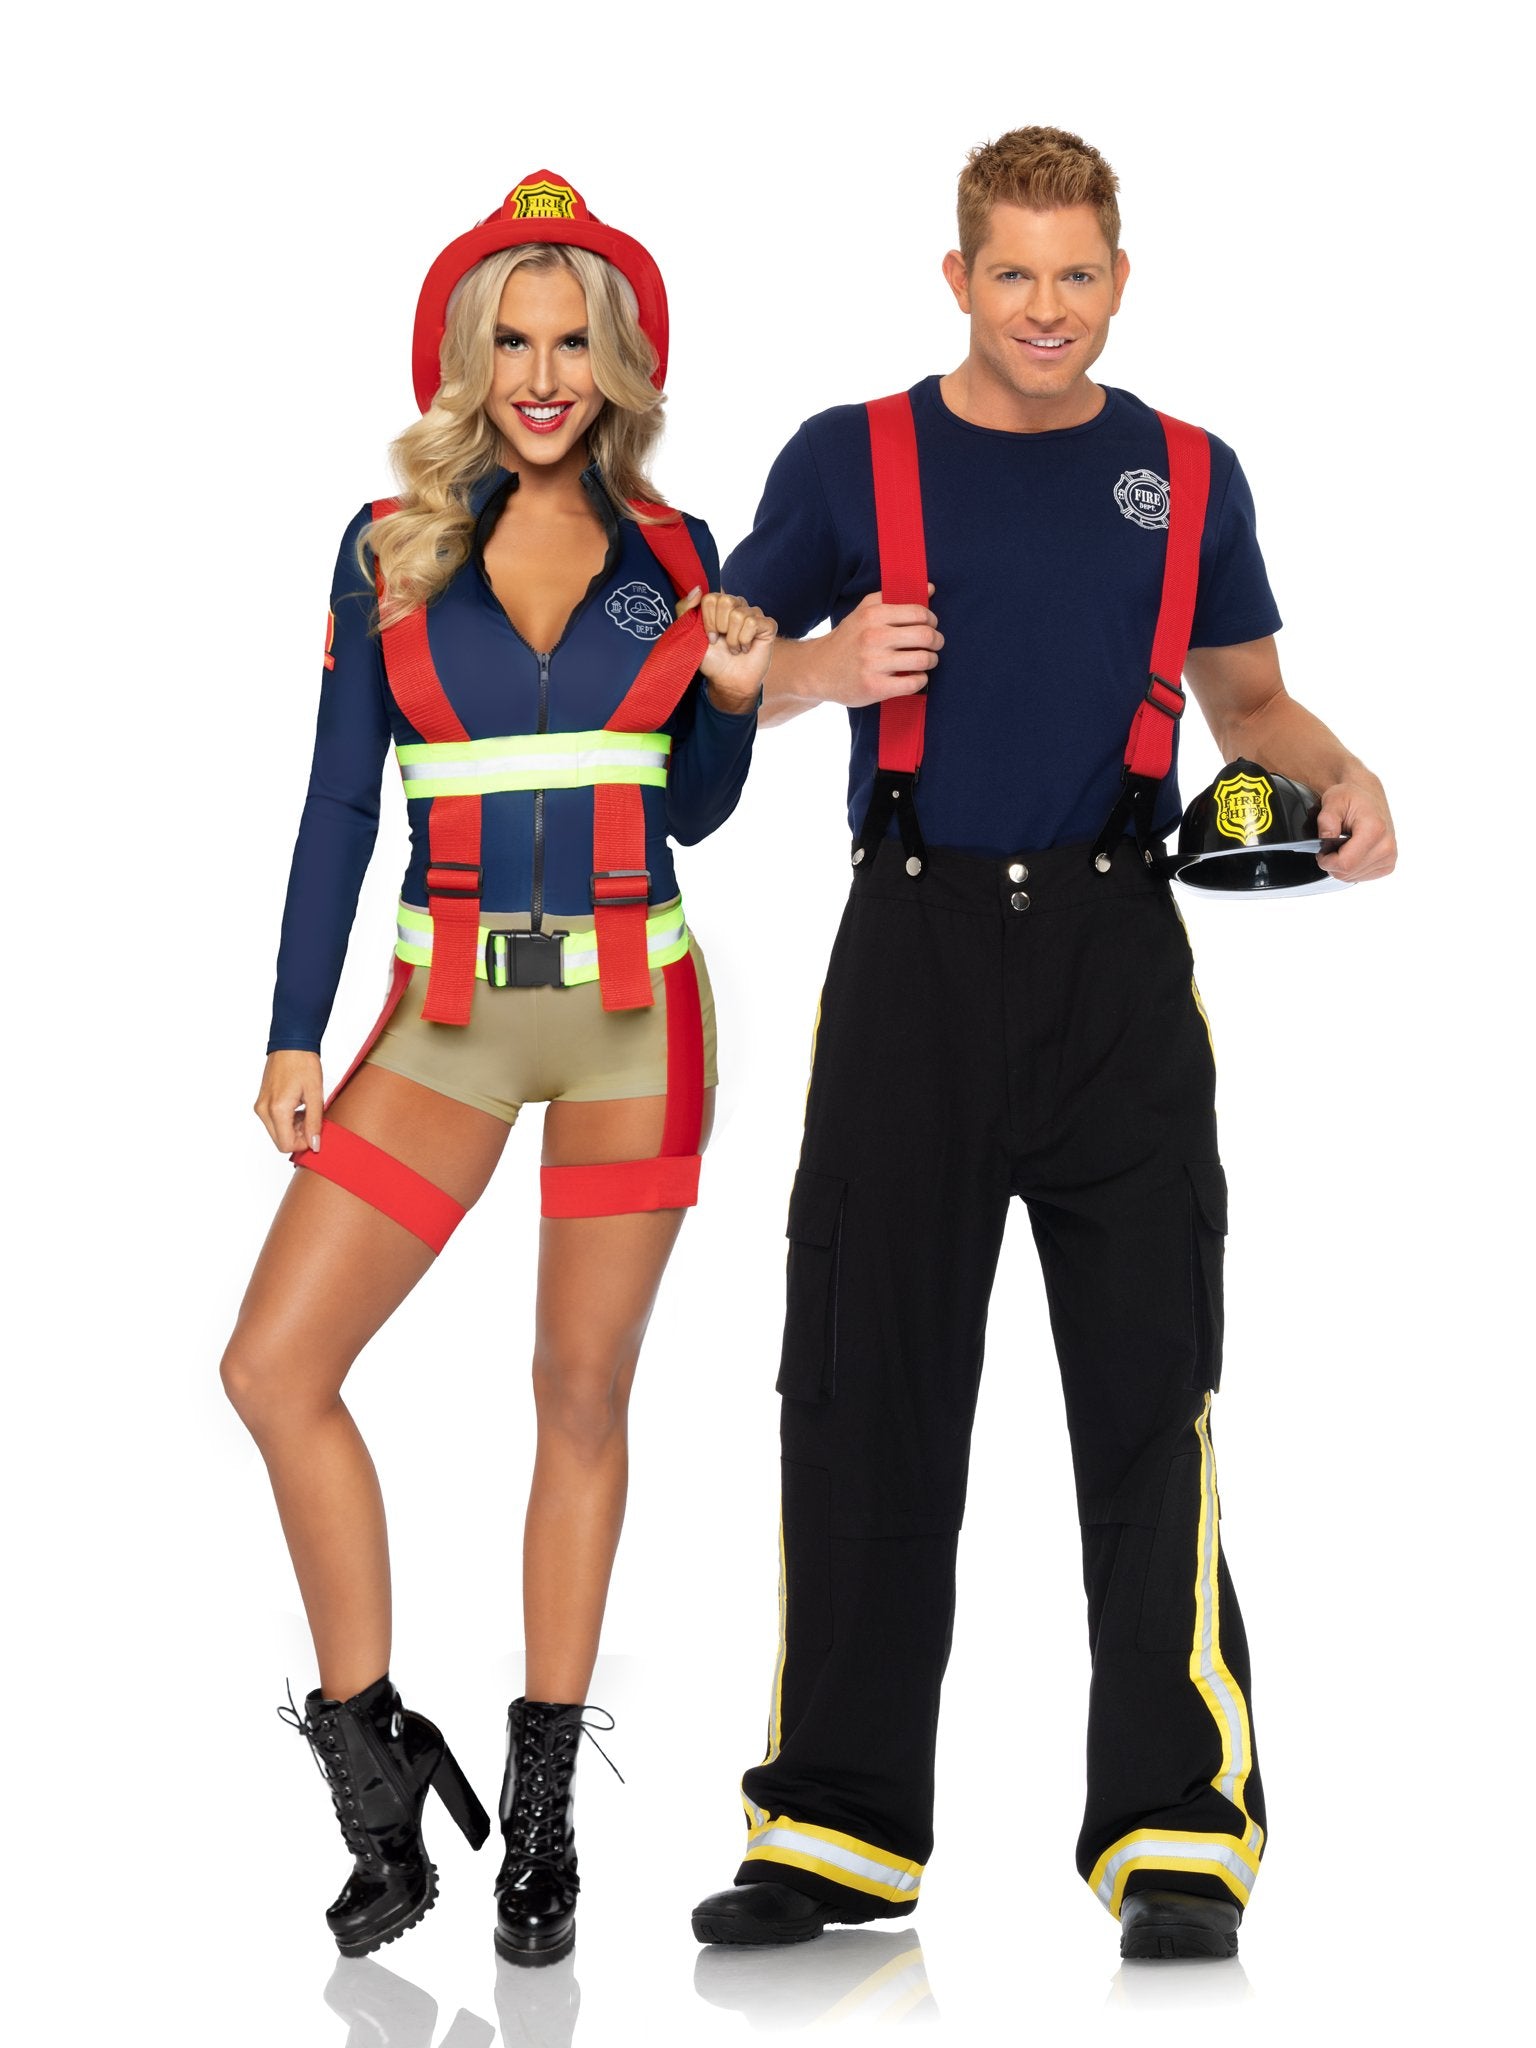 Fireman Costume, Men's Halloween Costumes